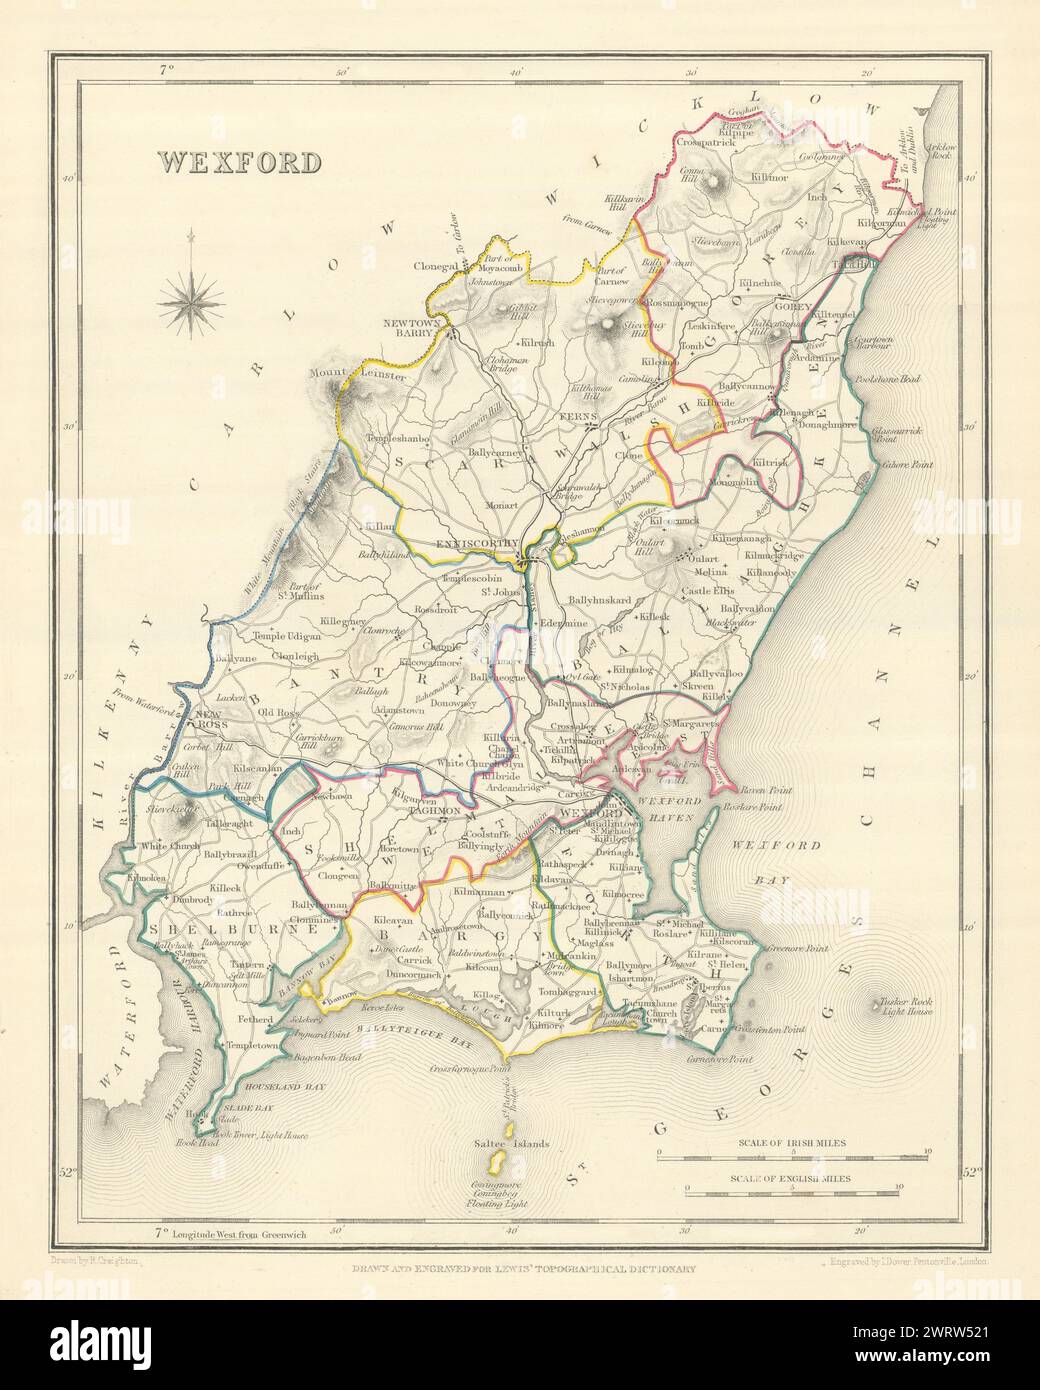 Mappa antica DELLA CONTEA DI WEXFORD per LEWIS di CREIGHTON & DOWER. Irlanda 1850 Foto Stock